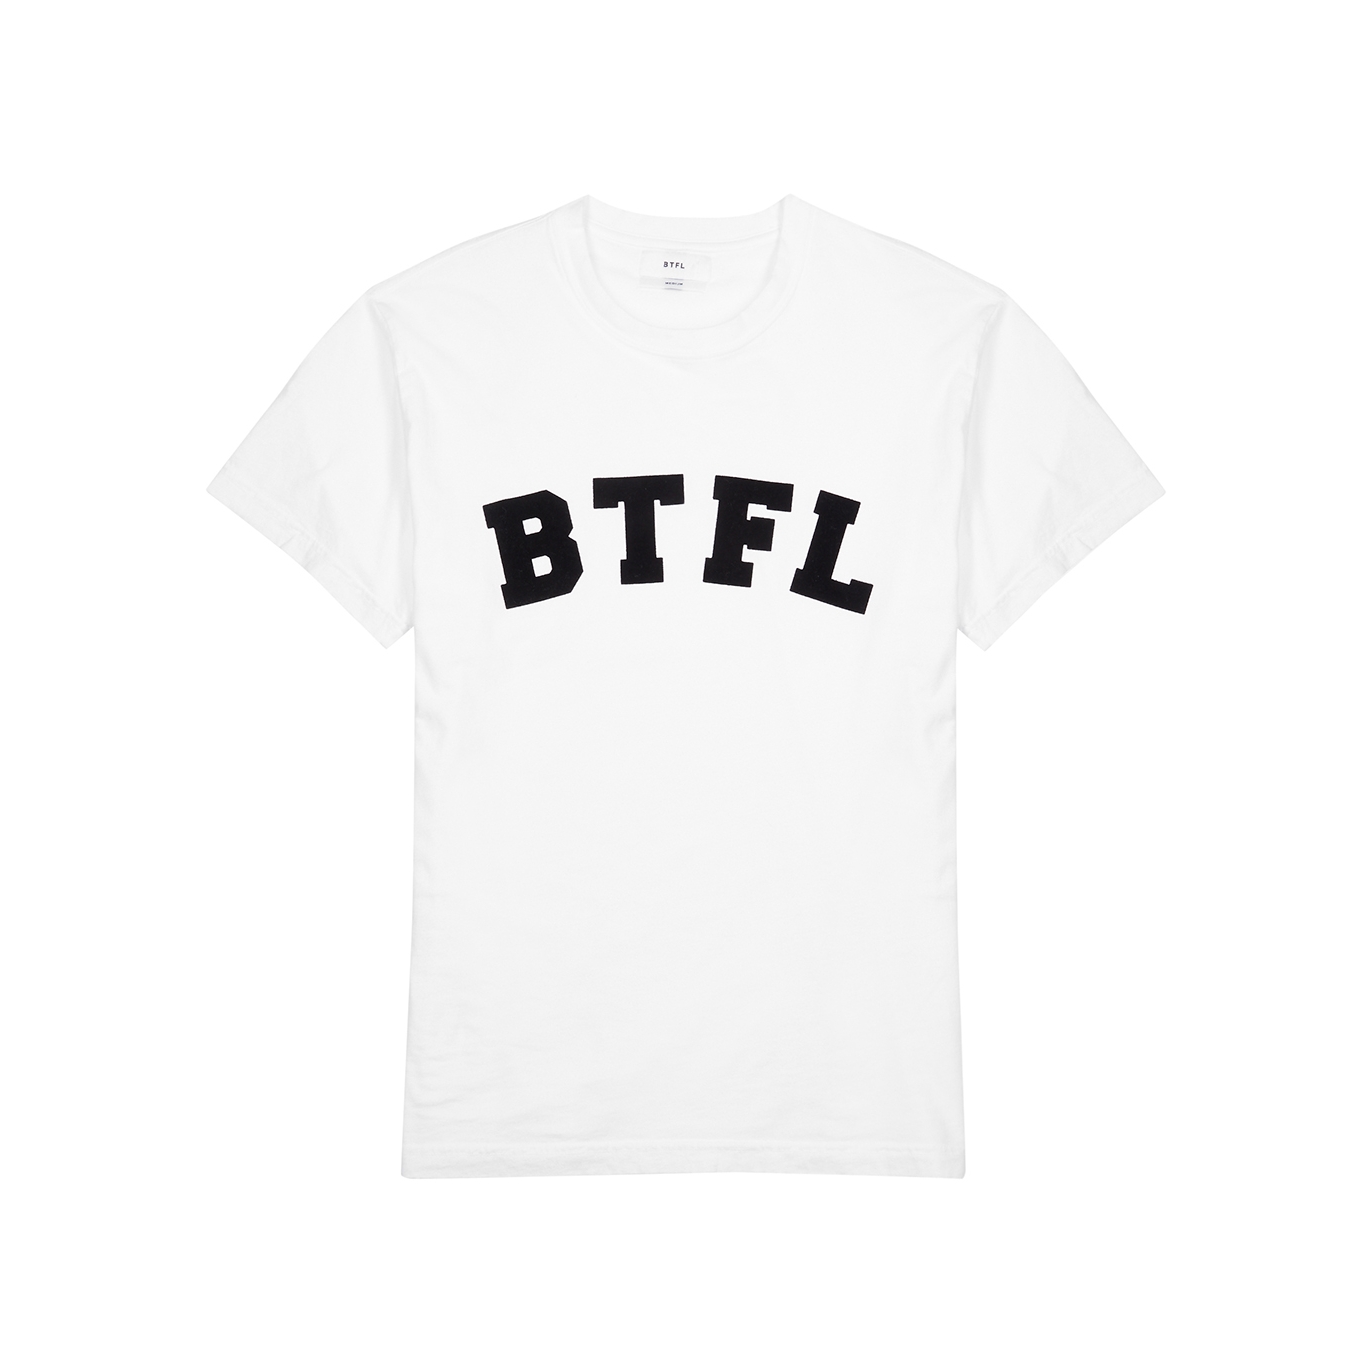 Btfl Logo Cotton T-shirt - White - M